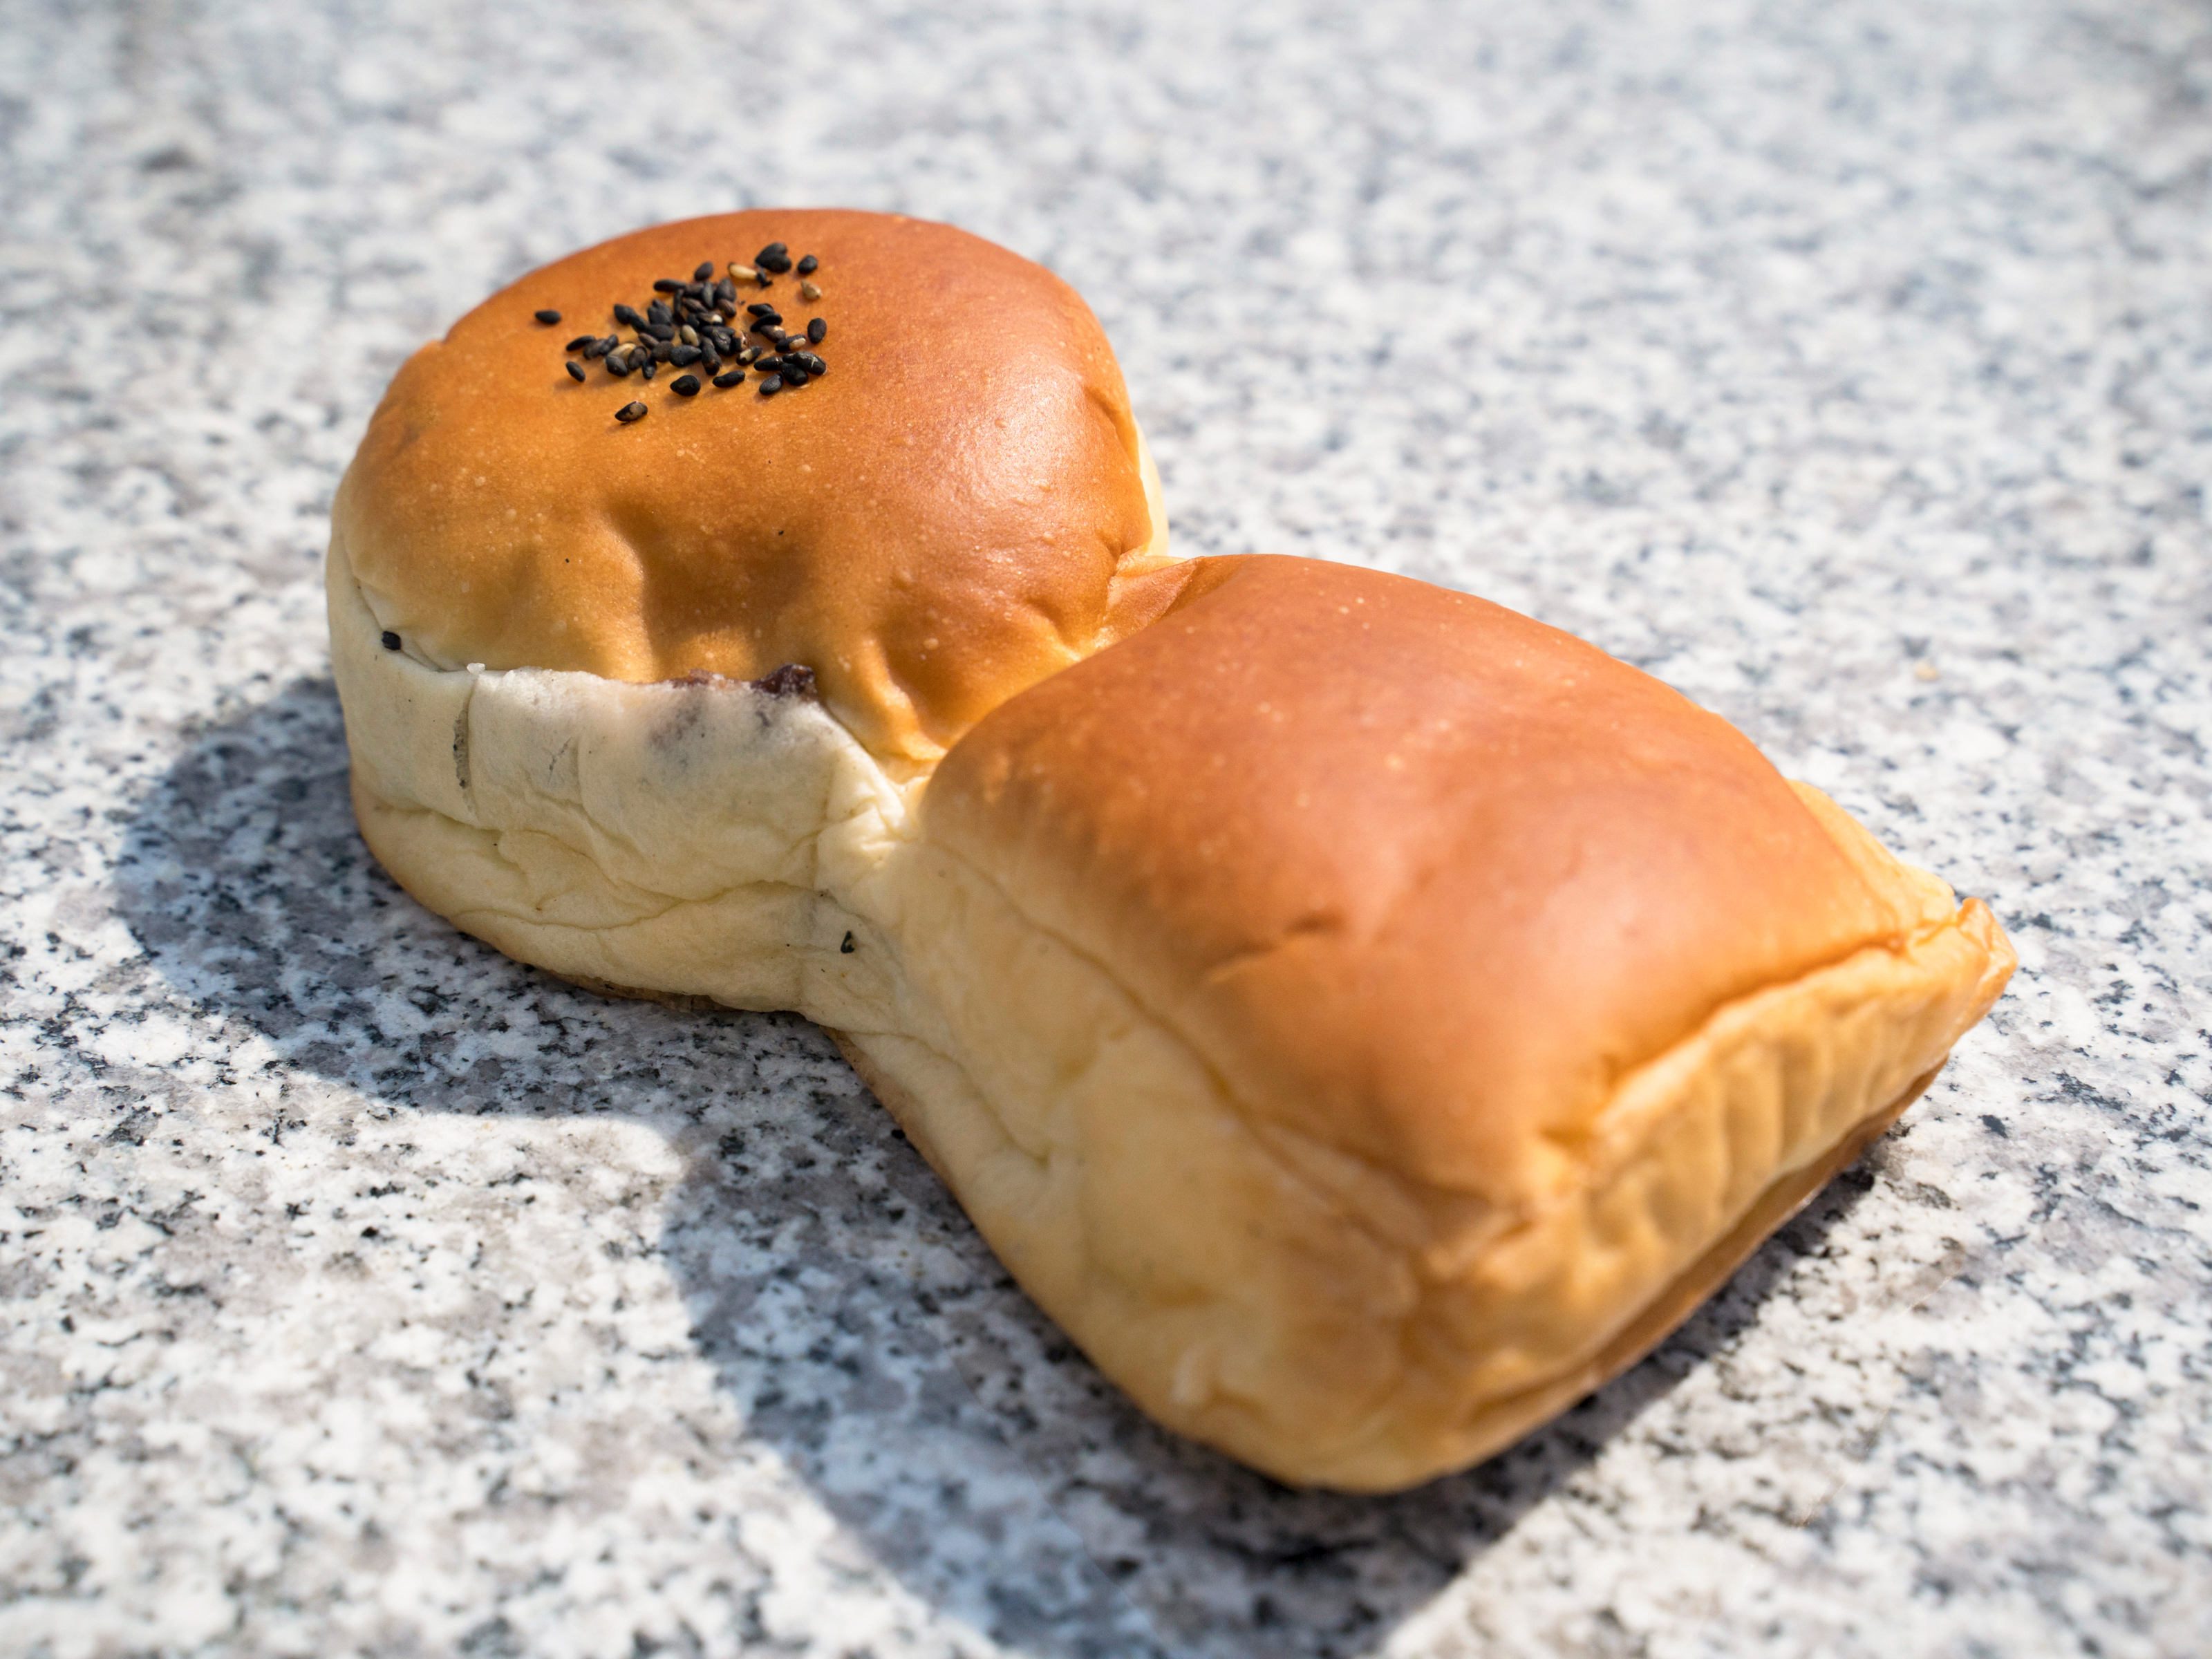 loire面包店的招牌产品“御陵豆馅面包”